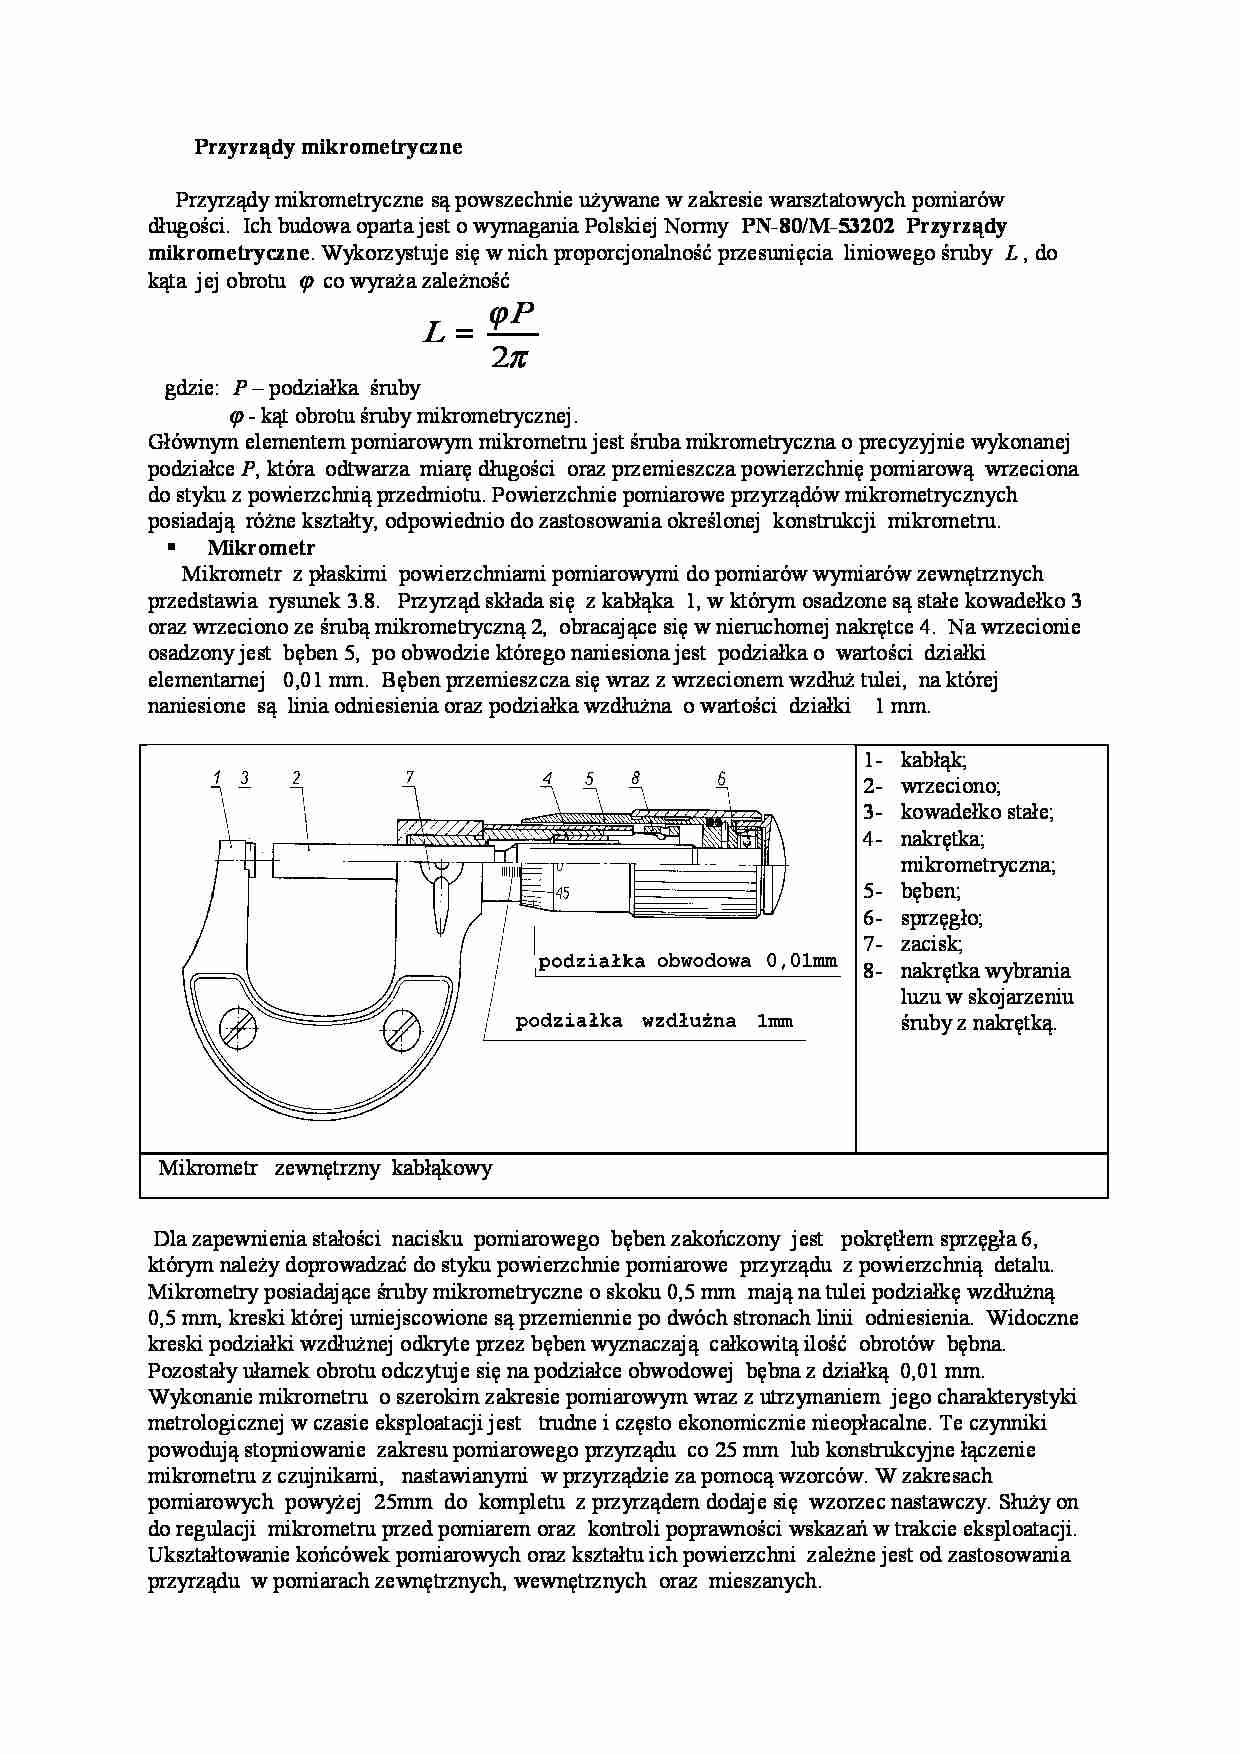 Przyrządy mikrometryczne - Wielkość mierzona - strona 1